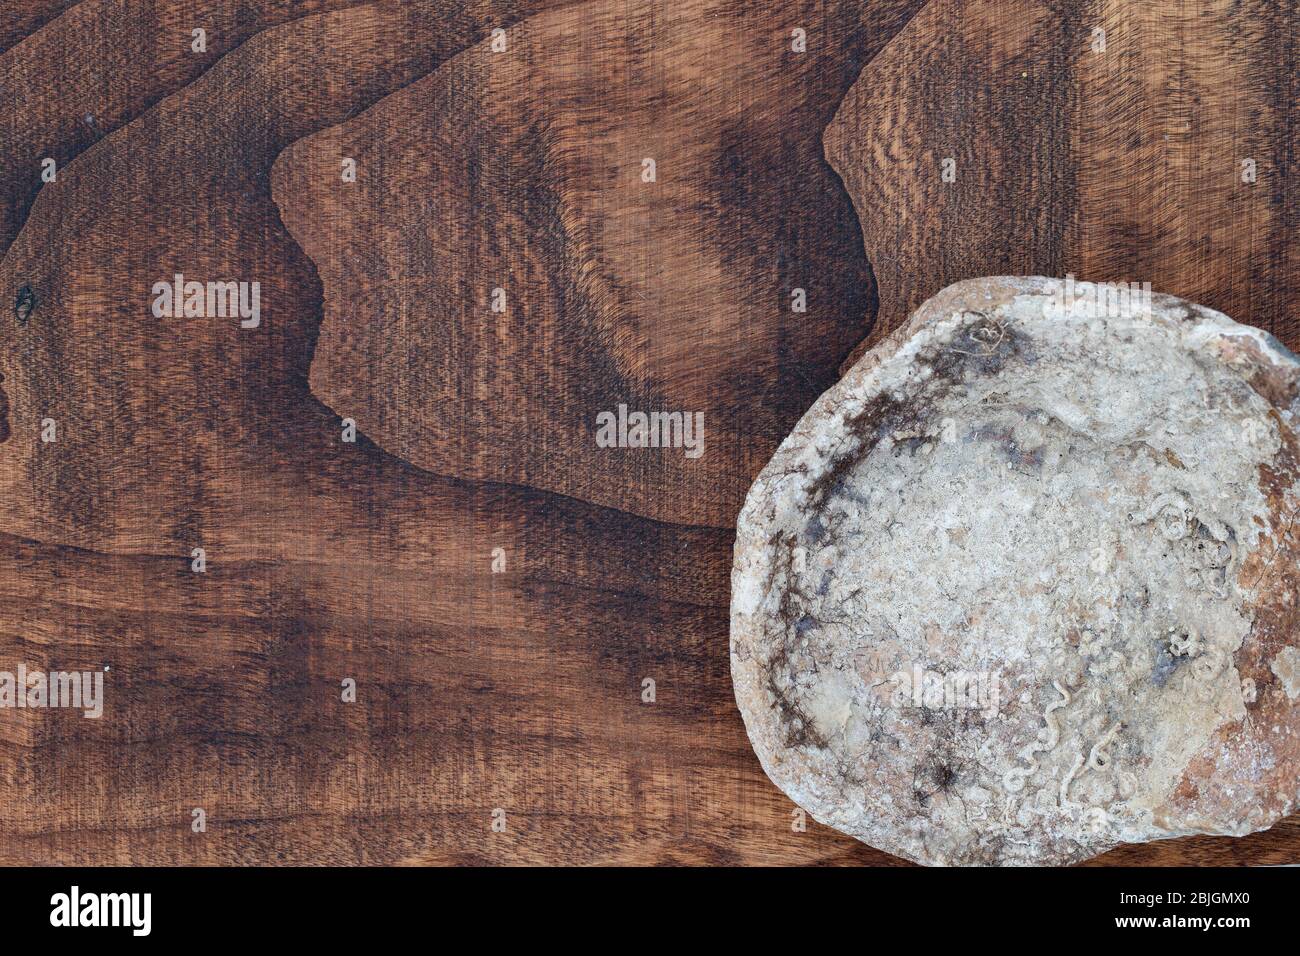 Eine Amphore auf einer rauen Holzstruktur Grunge Meer gewaschen verwittertes Holz und bunte Seeigel Muscheln Draufsicht, gefiltertes Bild mit etwas Platz für Typi Stockfoto